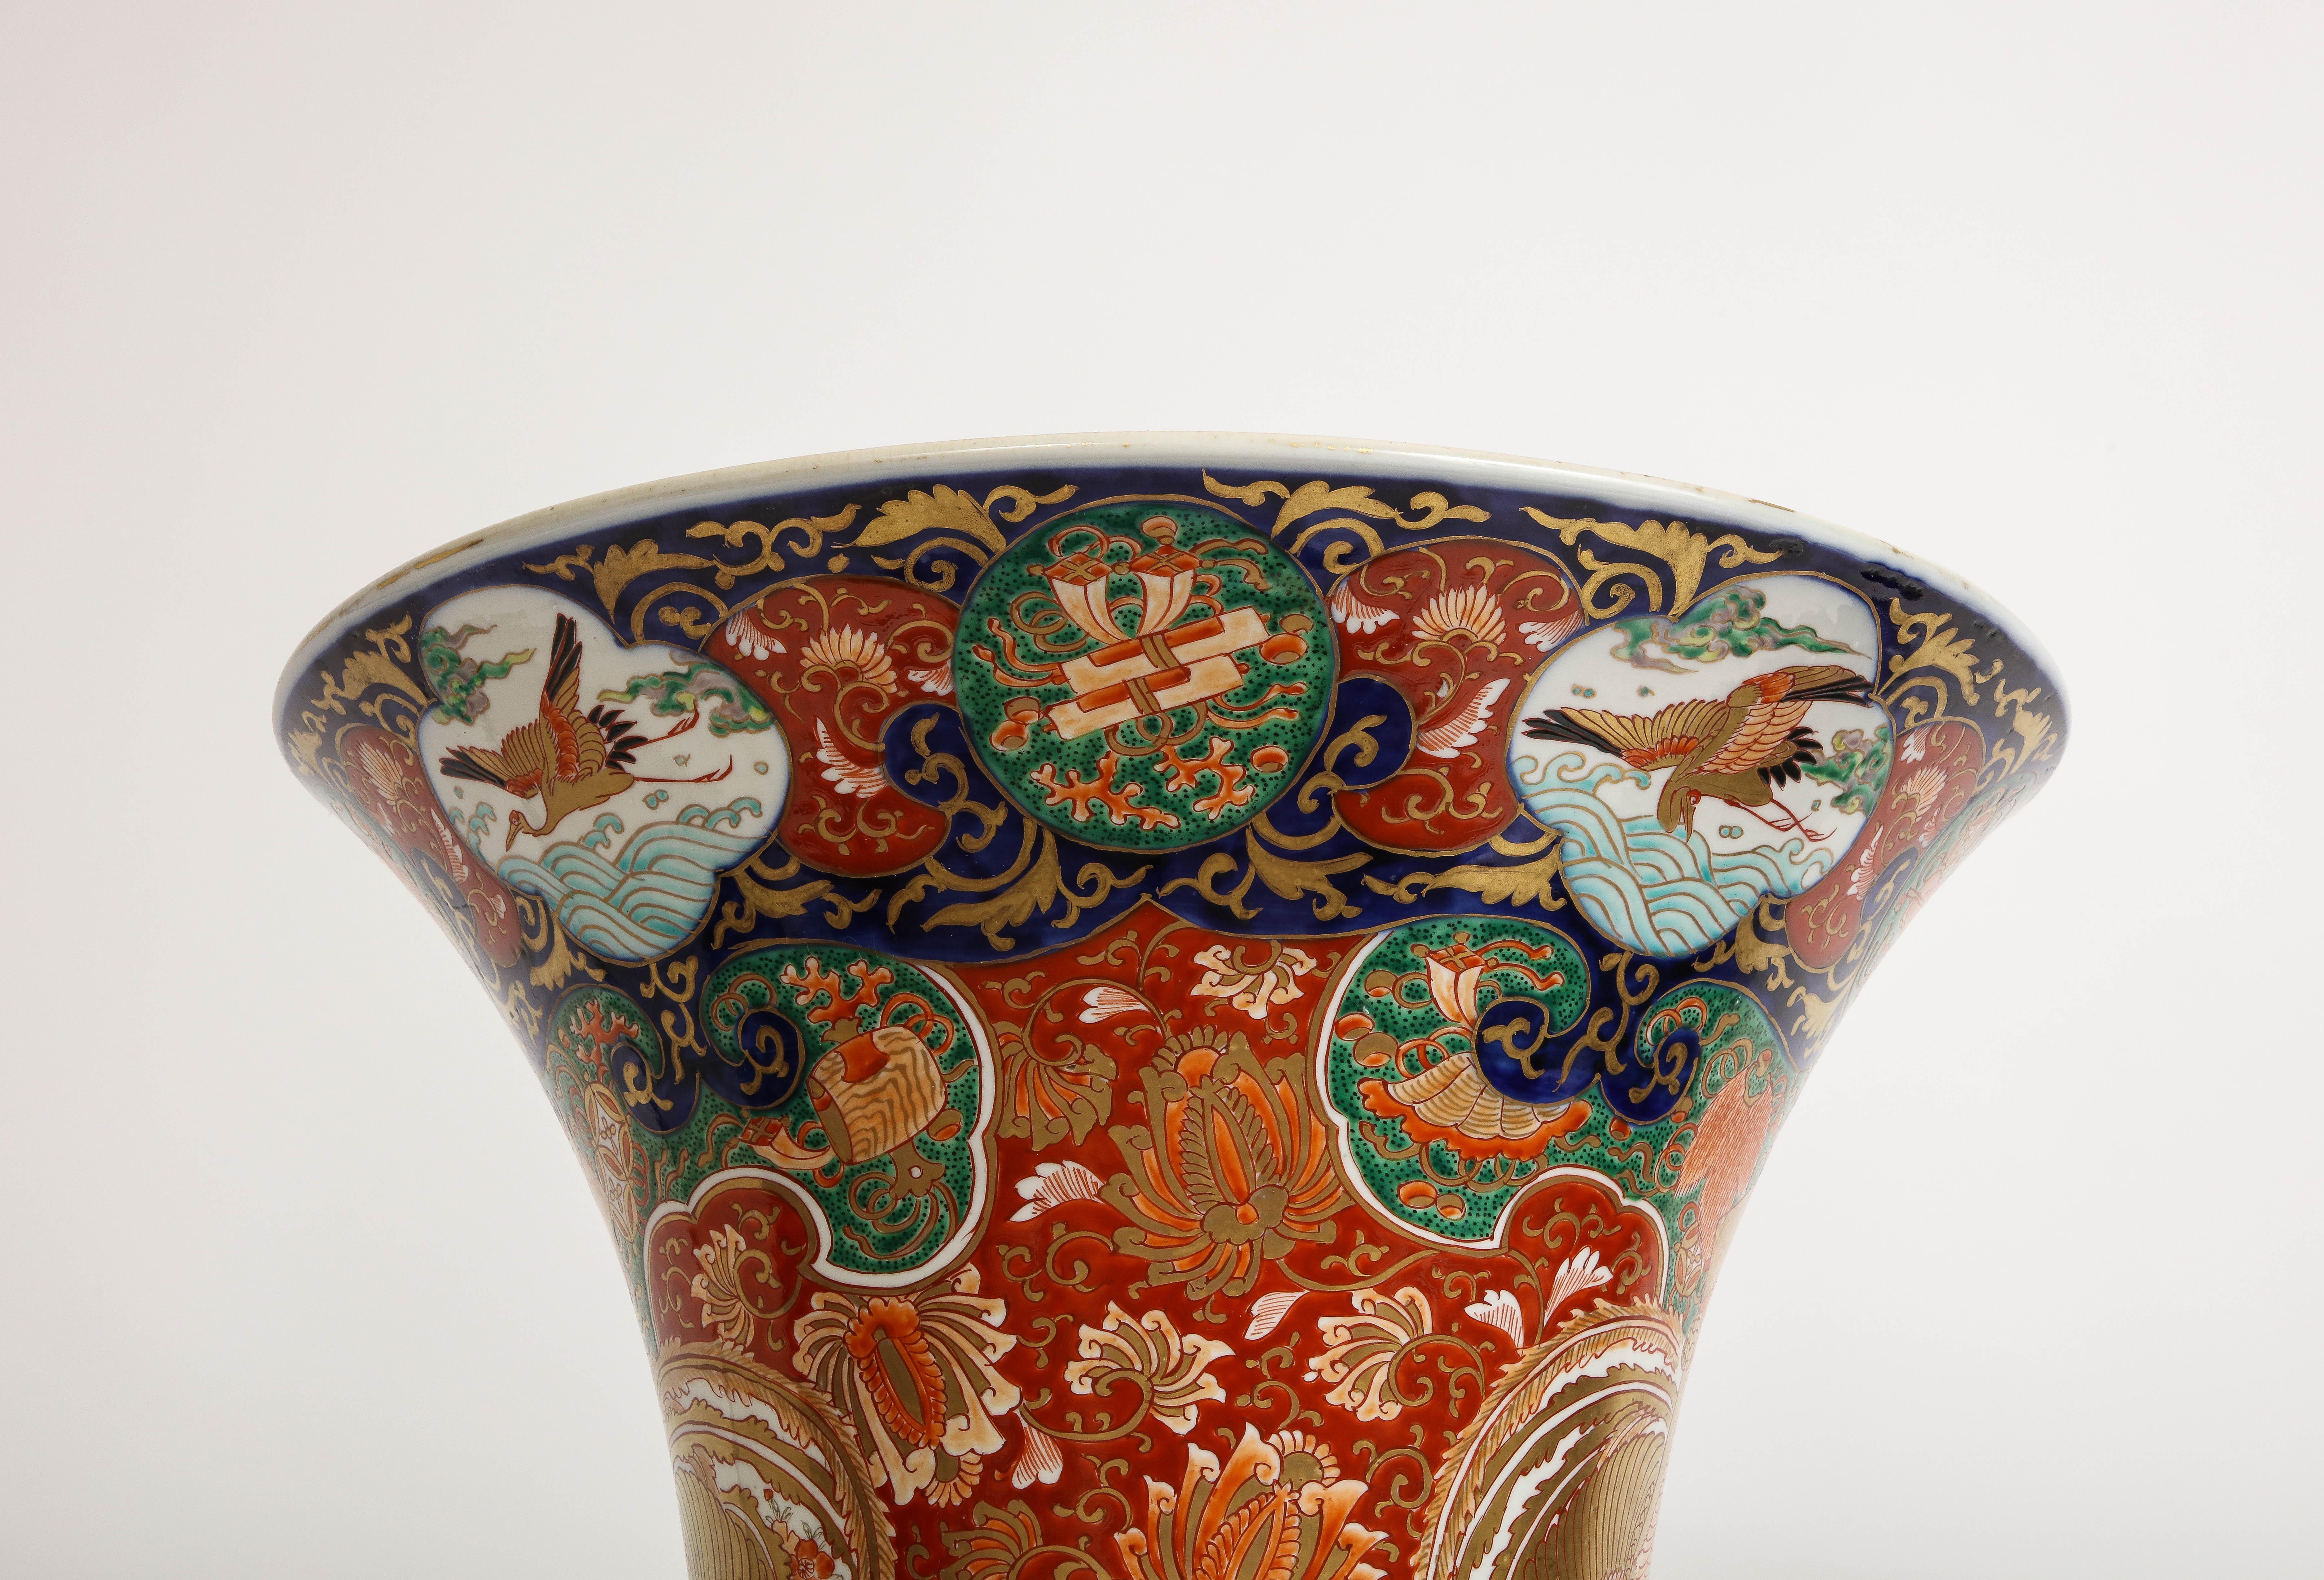  Palace Size Meiji Period Japanese Kutani Porcelain Vase, 1880 For Sale 1